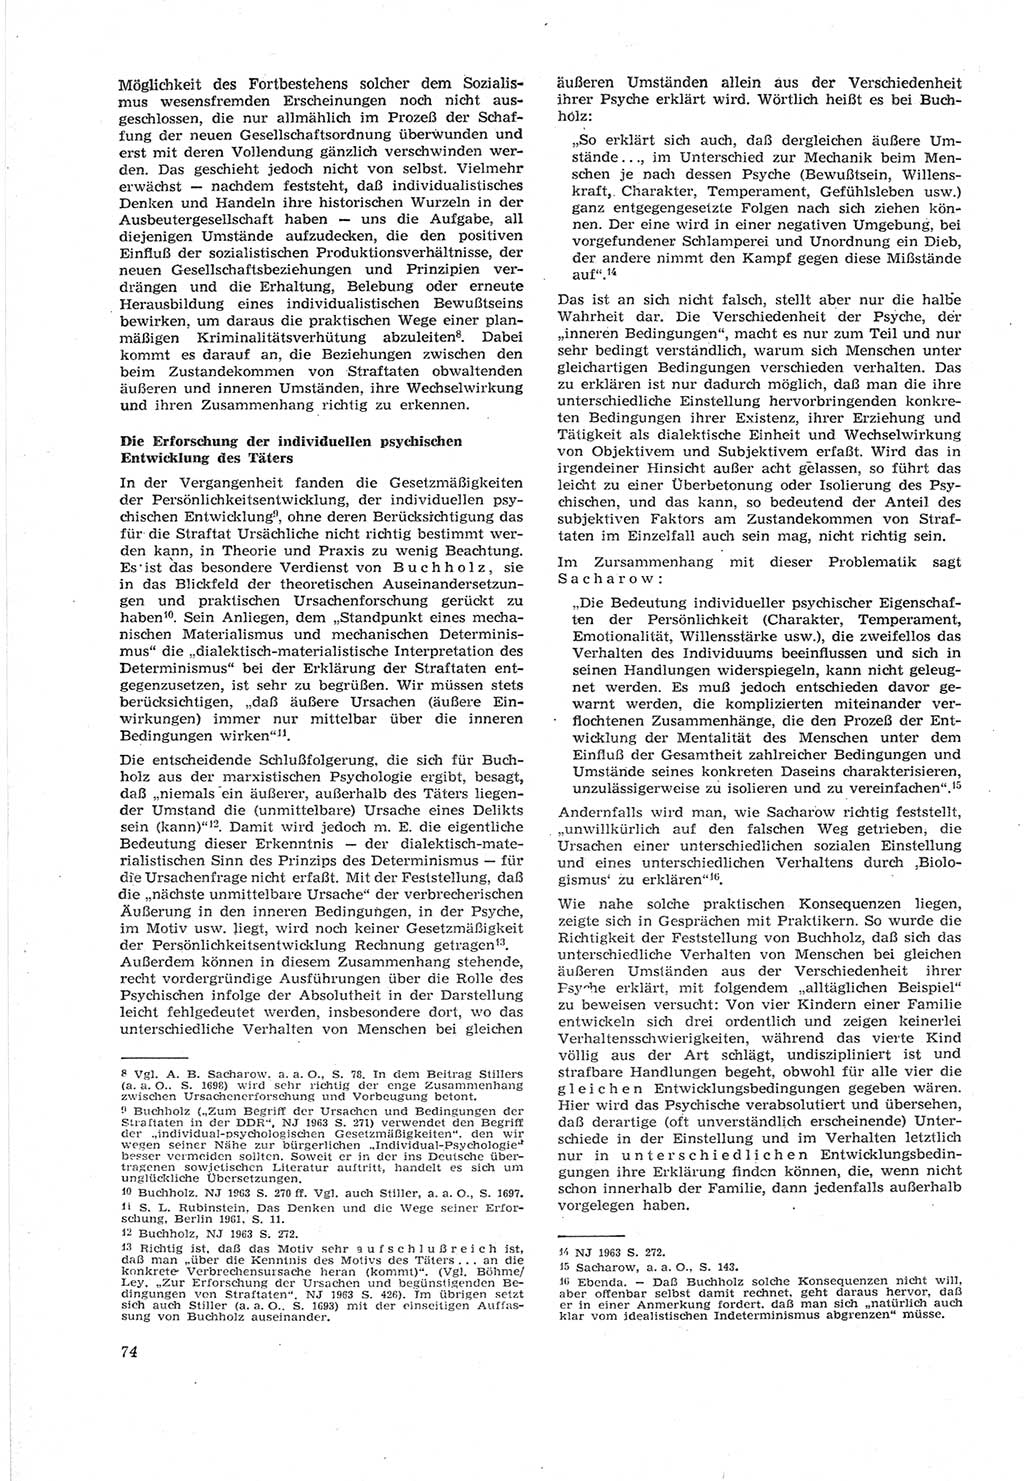 Neue Justiz (NJ), Zeitschrift für Recht und Rechtswissenschaft [Deutsche Demokratische Republik (DDR)], 18. Jahrgang 1964, Seite 74 (NJ DDR 1964, S. 74)